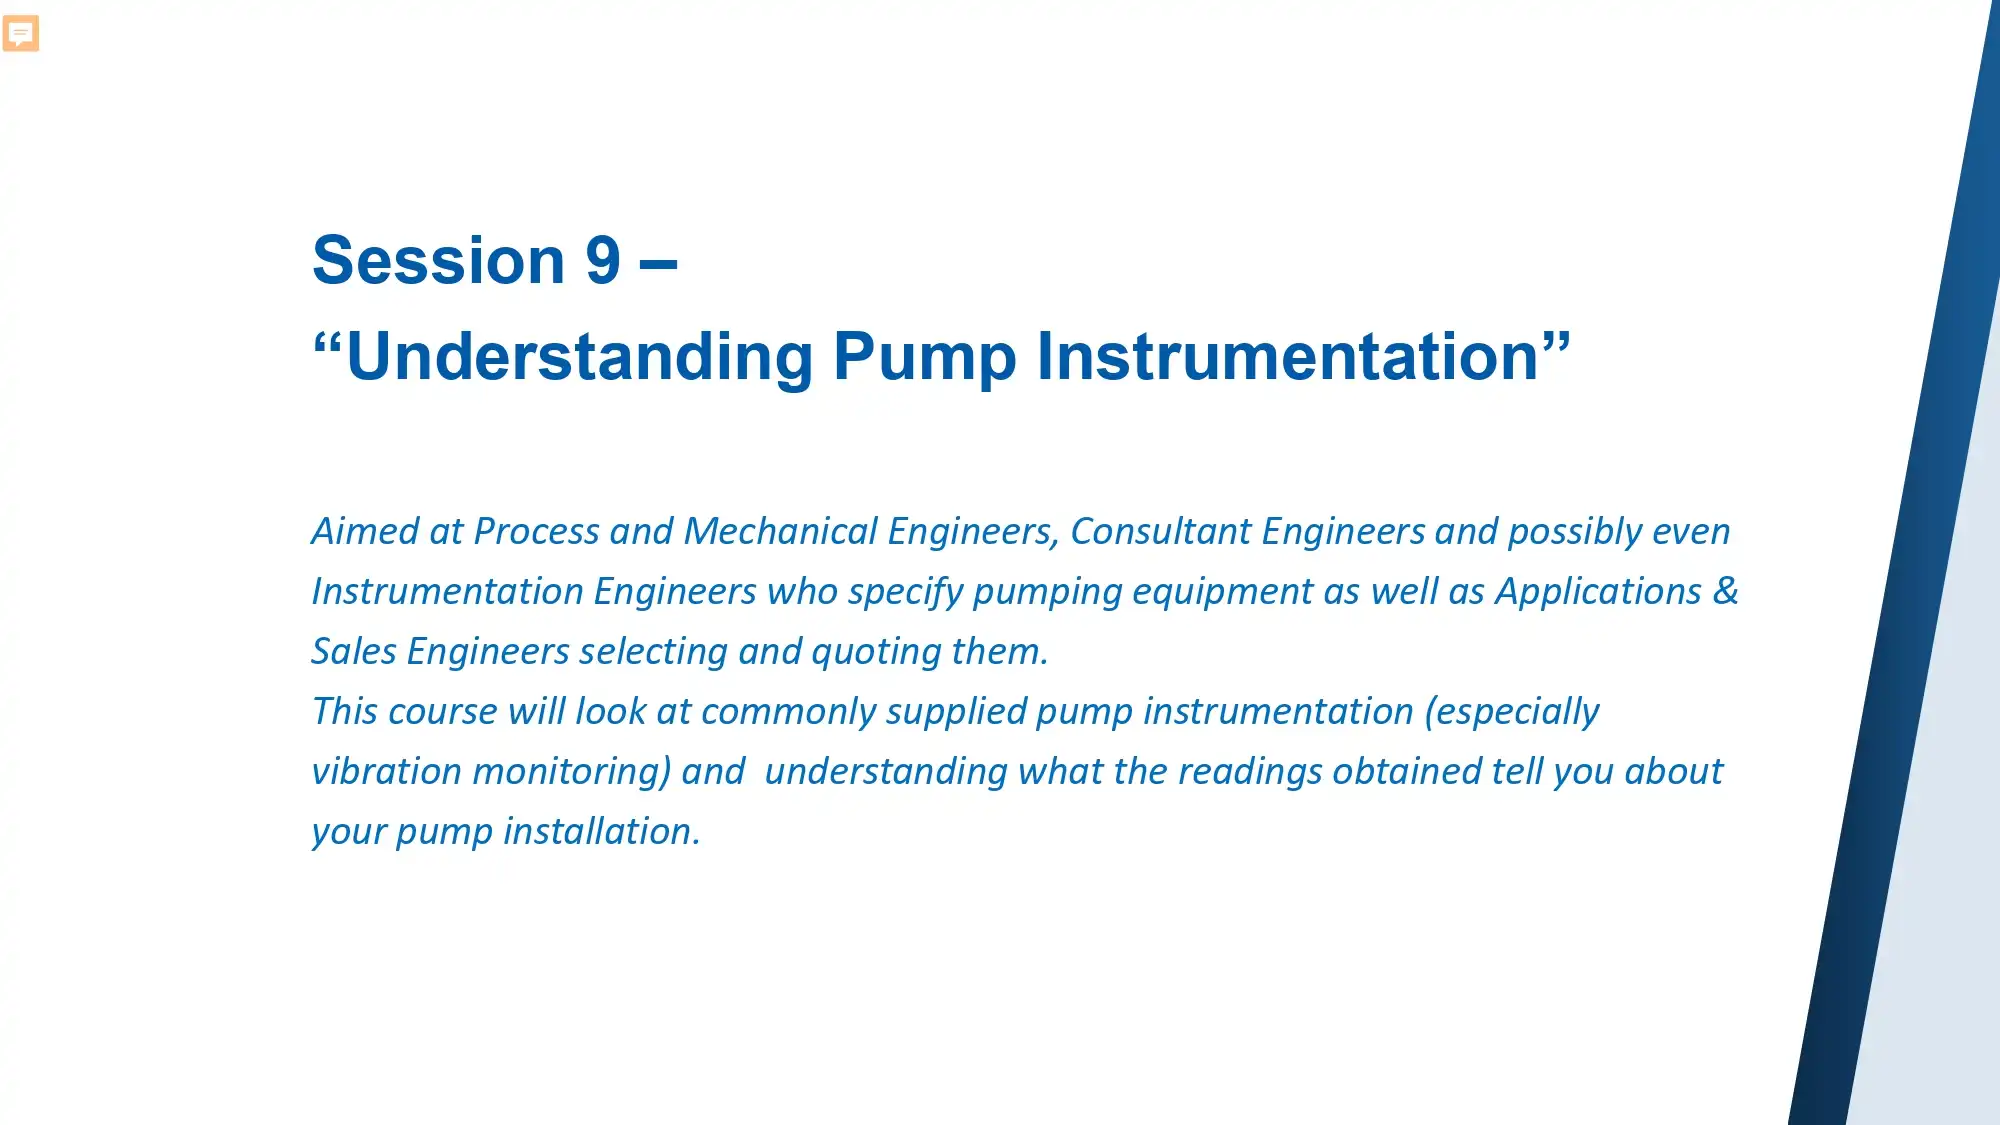 Session 9 – “Understanding Pump Instrumentation”